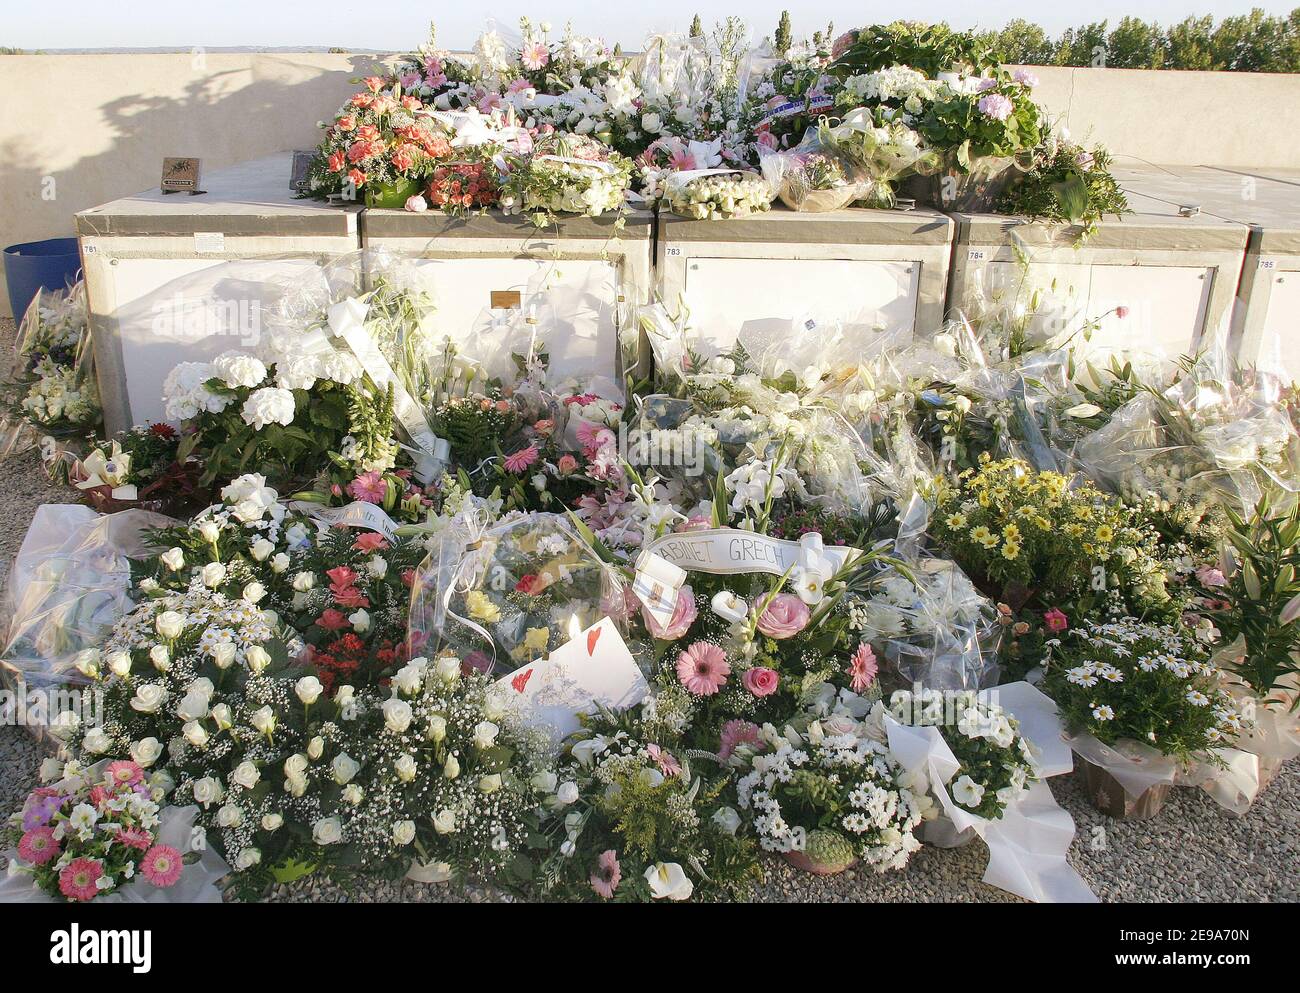 I familiari e i parenti di Madison Castel (5) frequentano i funerali della giovane ragazza a EYGUIERES, vicino a Marsiglia, in Francia, il 10 maggio 2006. Madison è stata rapita a casa sua e uccisa da un ex amante di sua madre la settimana scorsa. Foto di Pascal Parrot/ABACAPRESS.COM Foto Stock